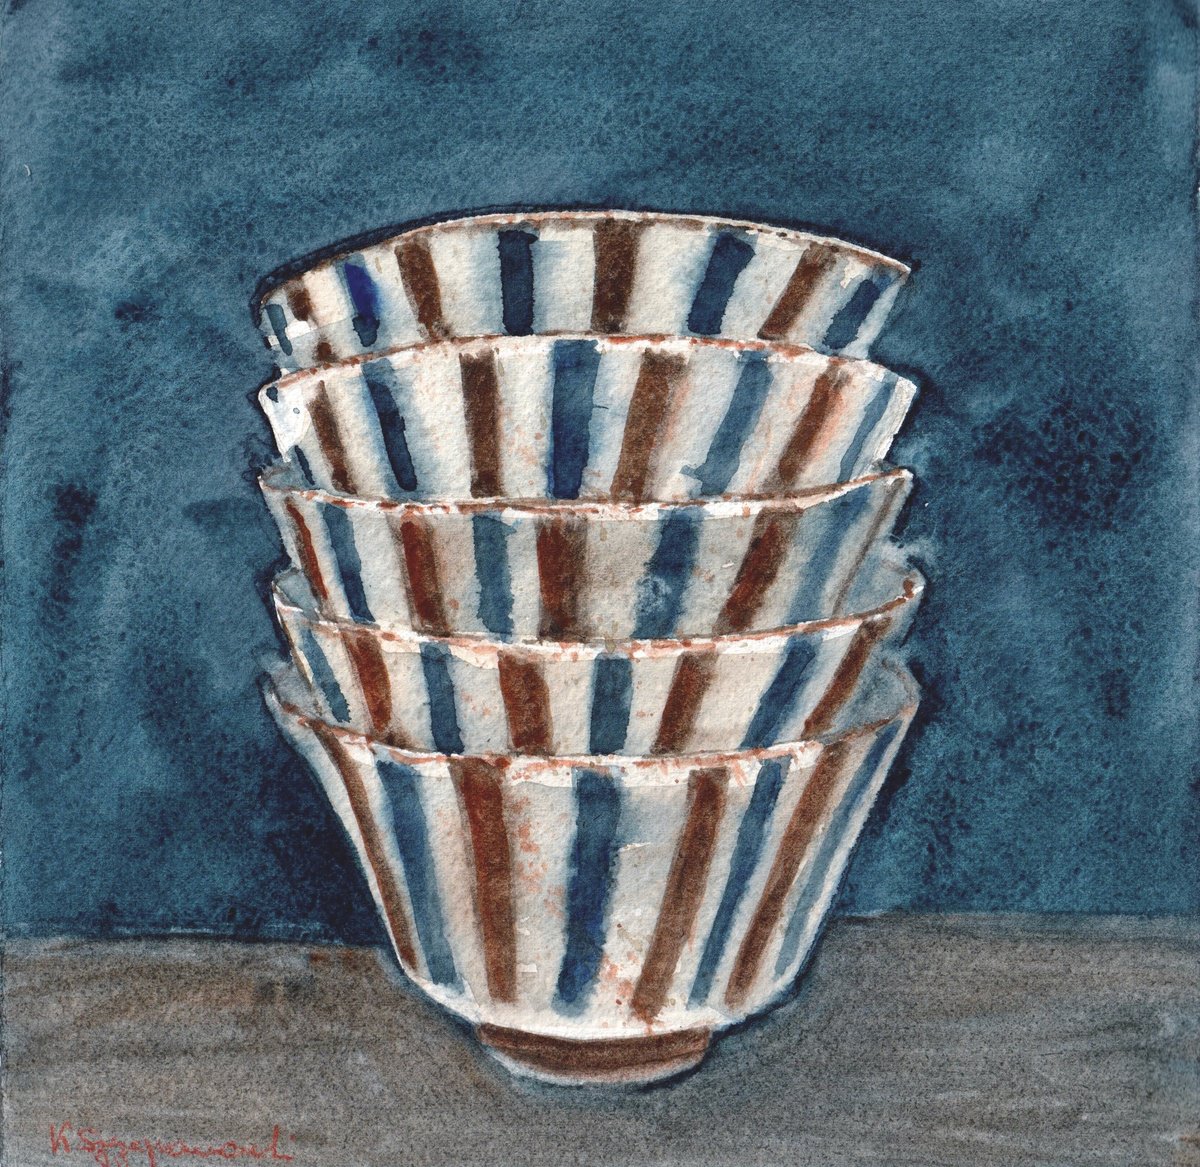 Blue and brown striped bowls by Krystyna Szczepanowski